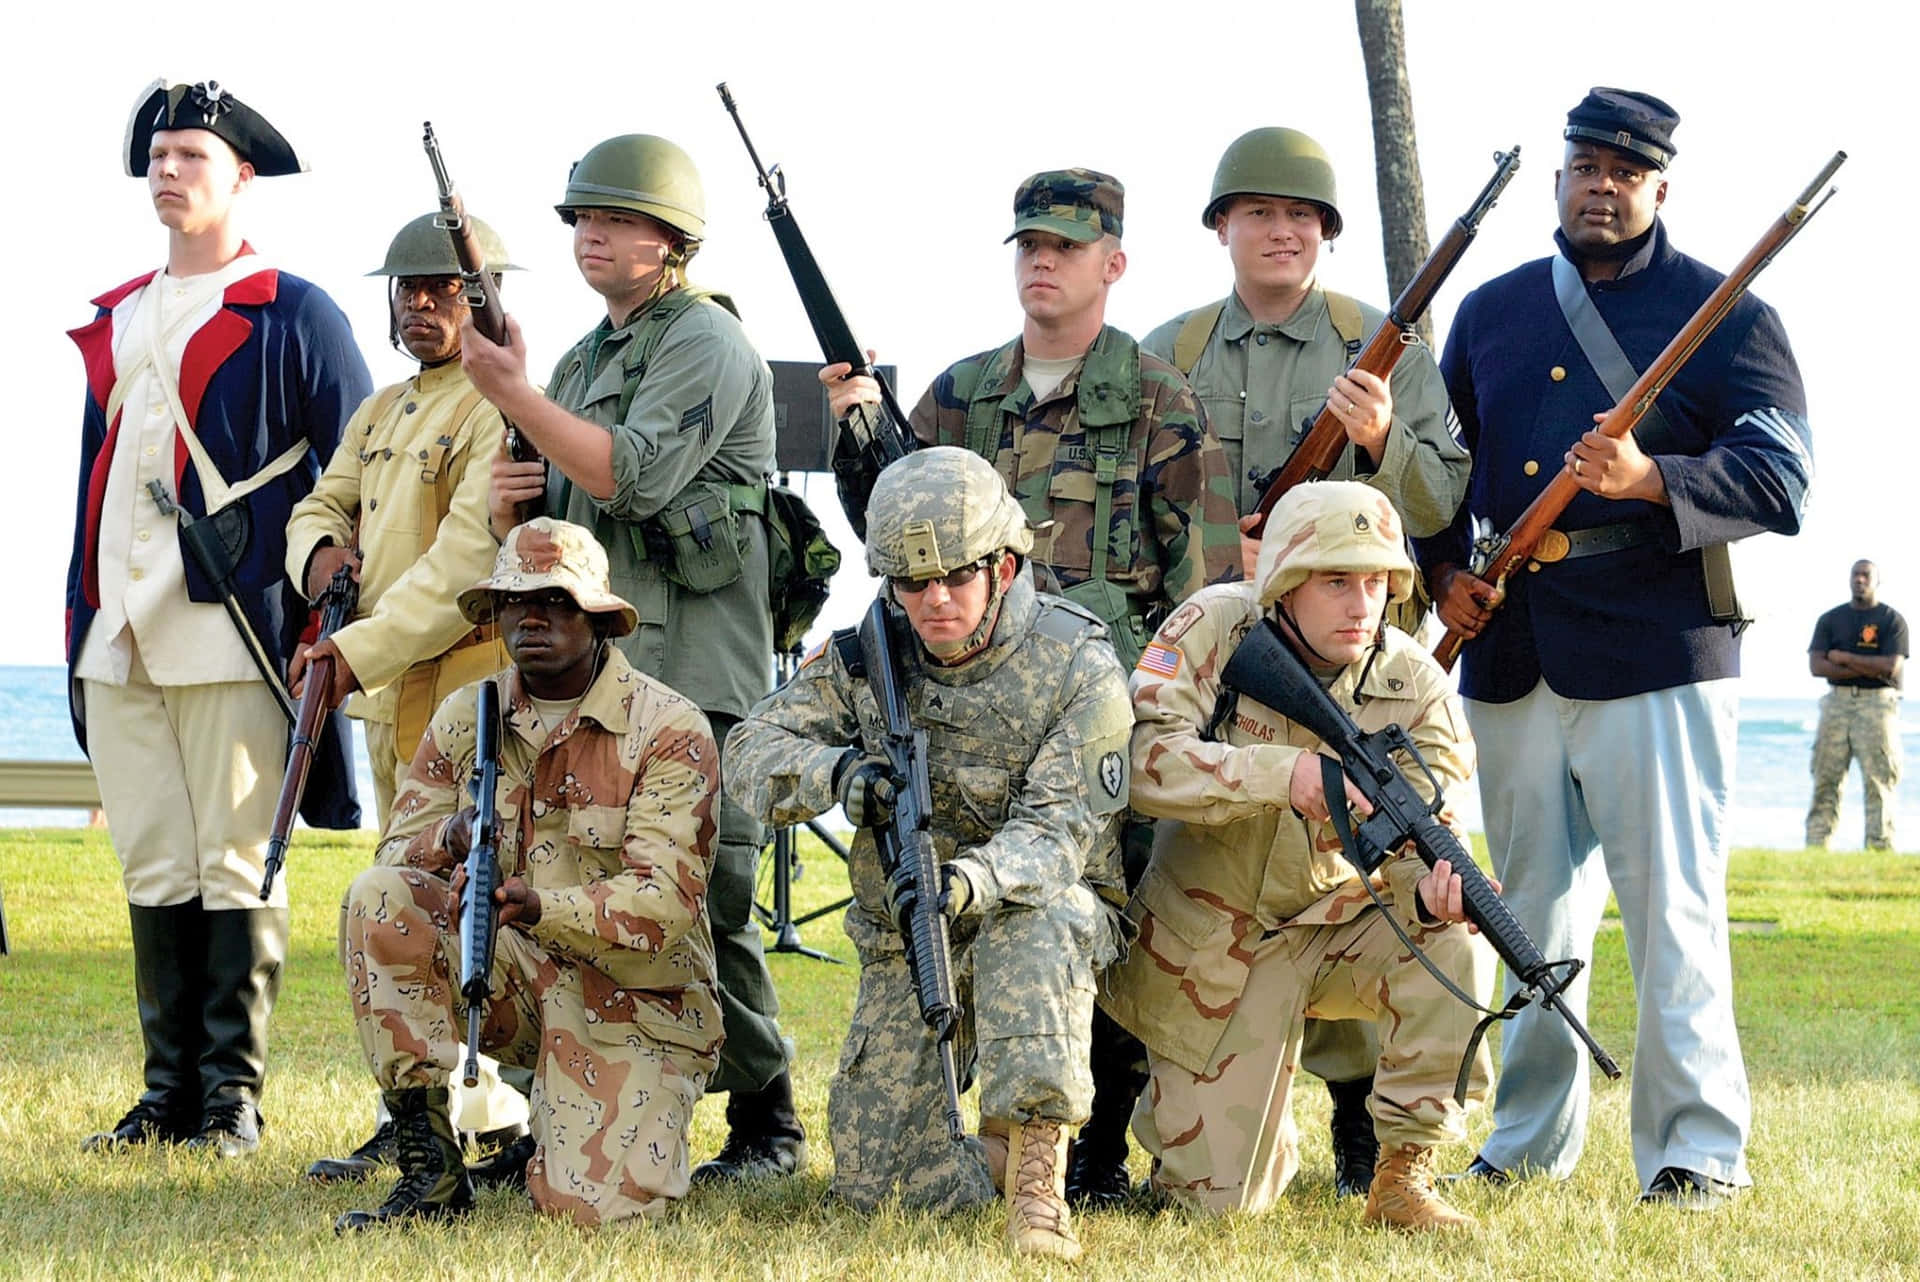 Amerikashelden Salutieren Helden In Uniform. Wallpaper